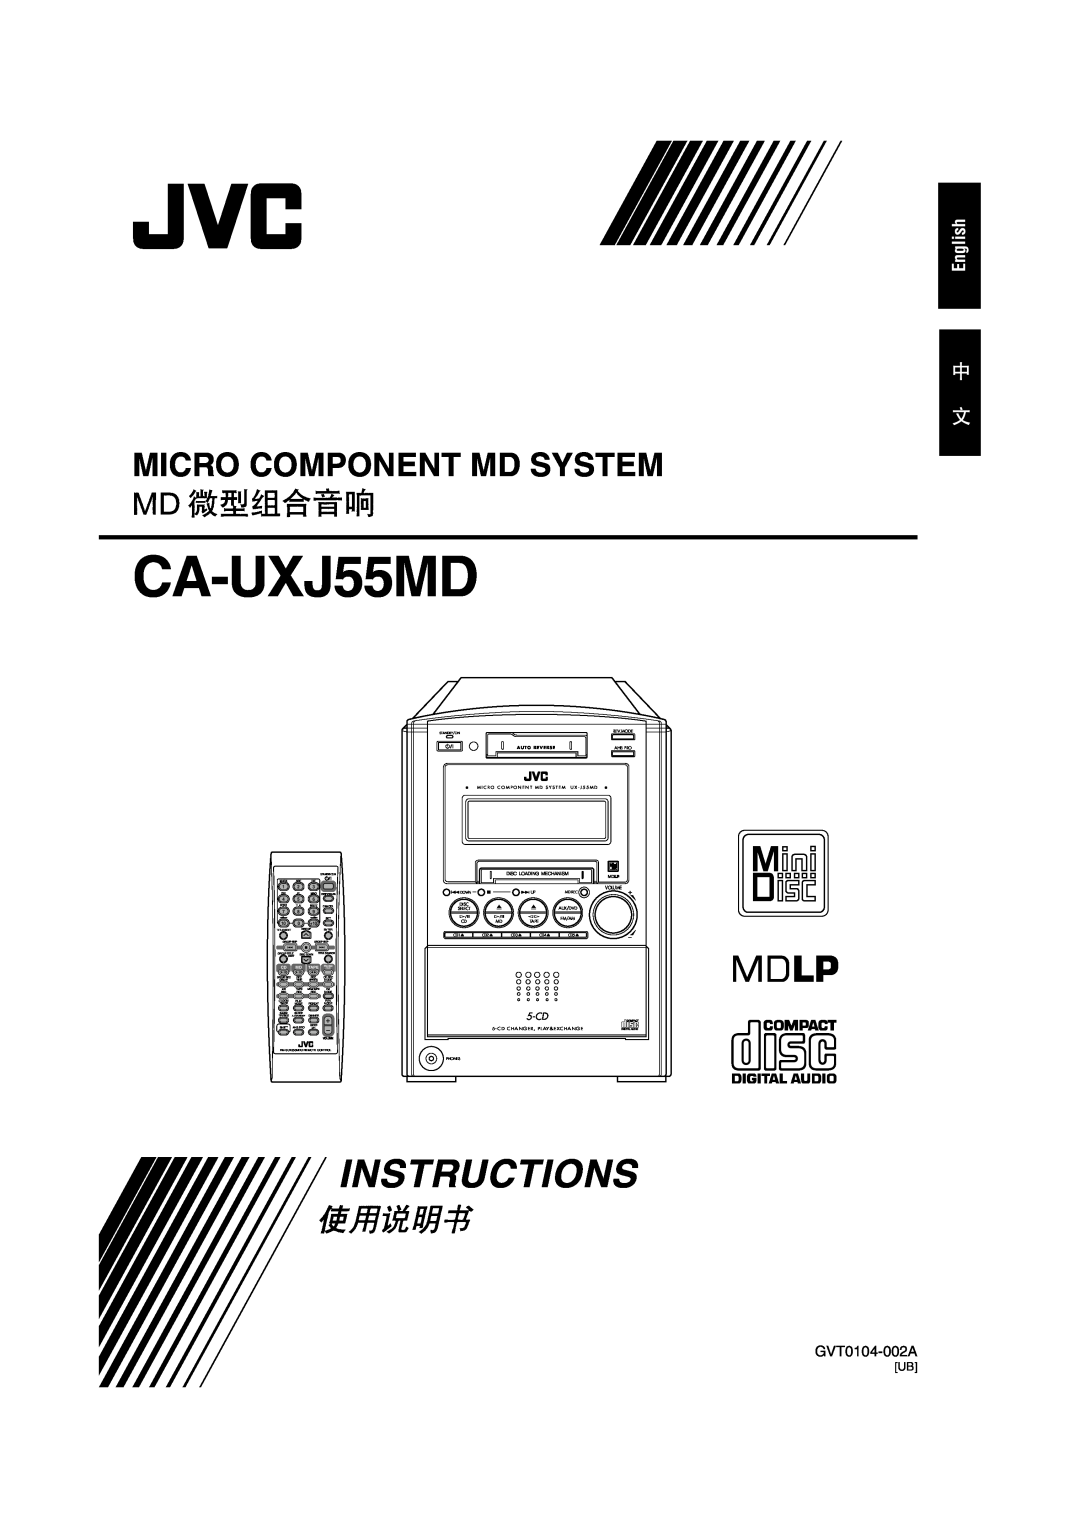 JVC GVT0104-002A manual English, CA-UXJ55MD, Instructions, Micro Component Md System, 5-CD, A U T O R E V E R S E 